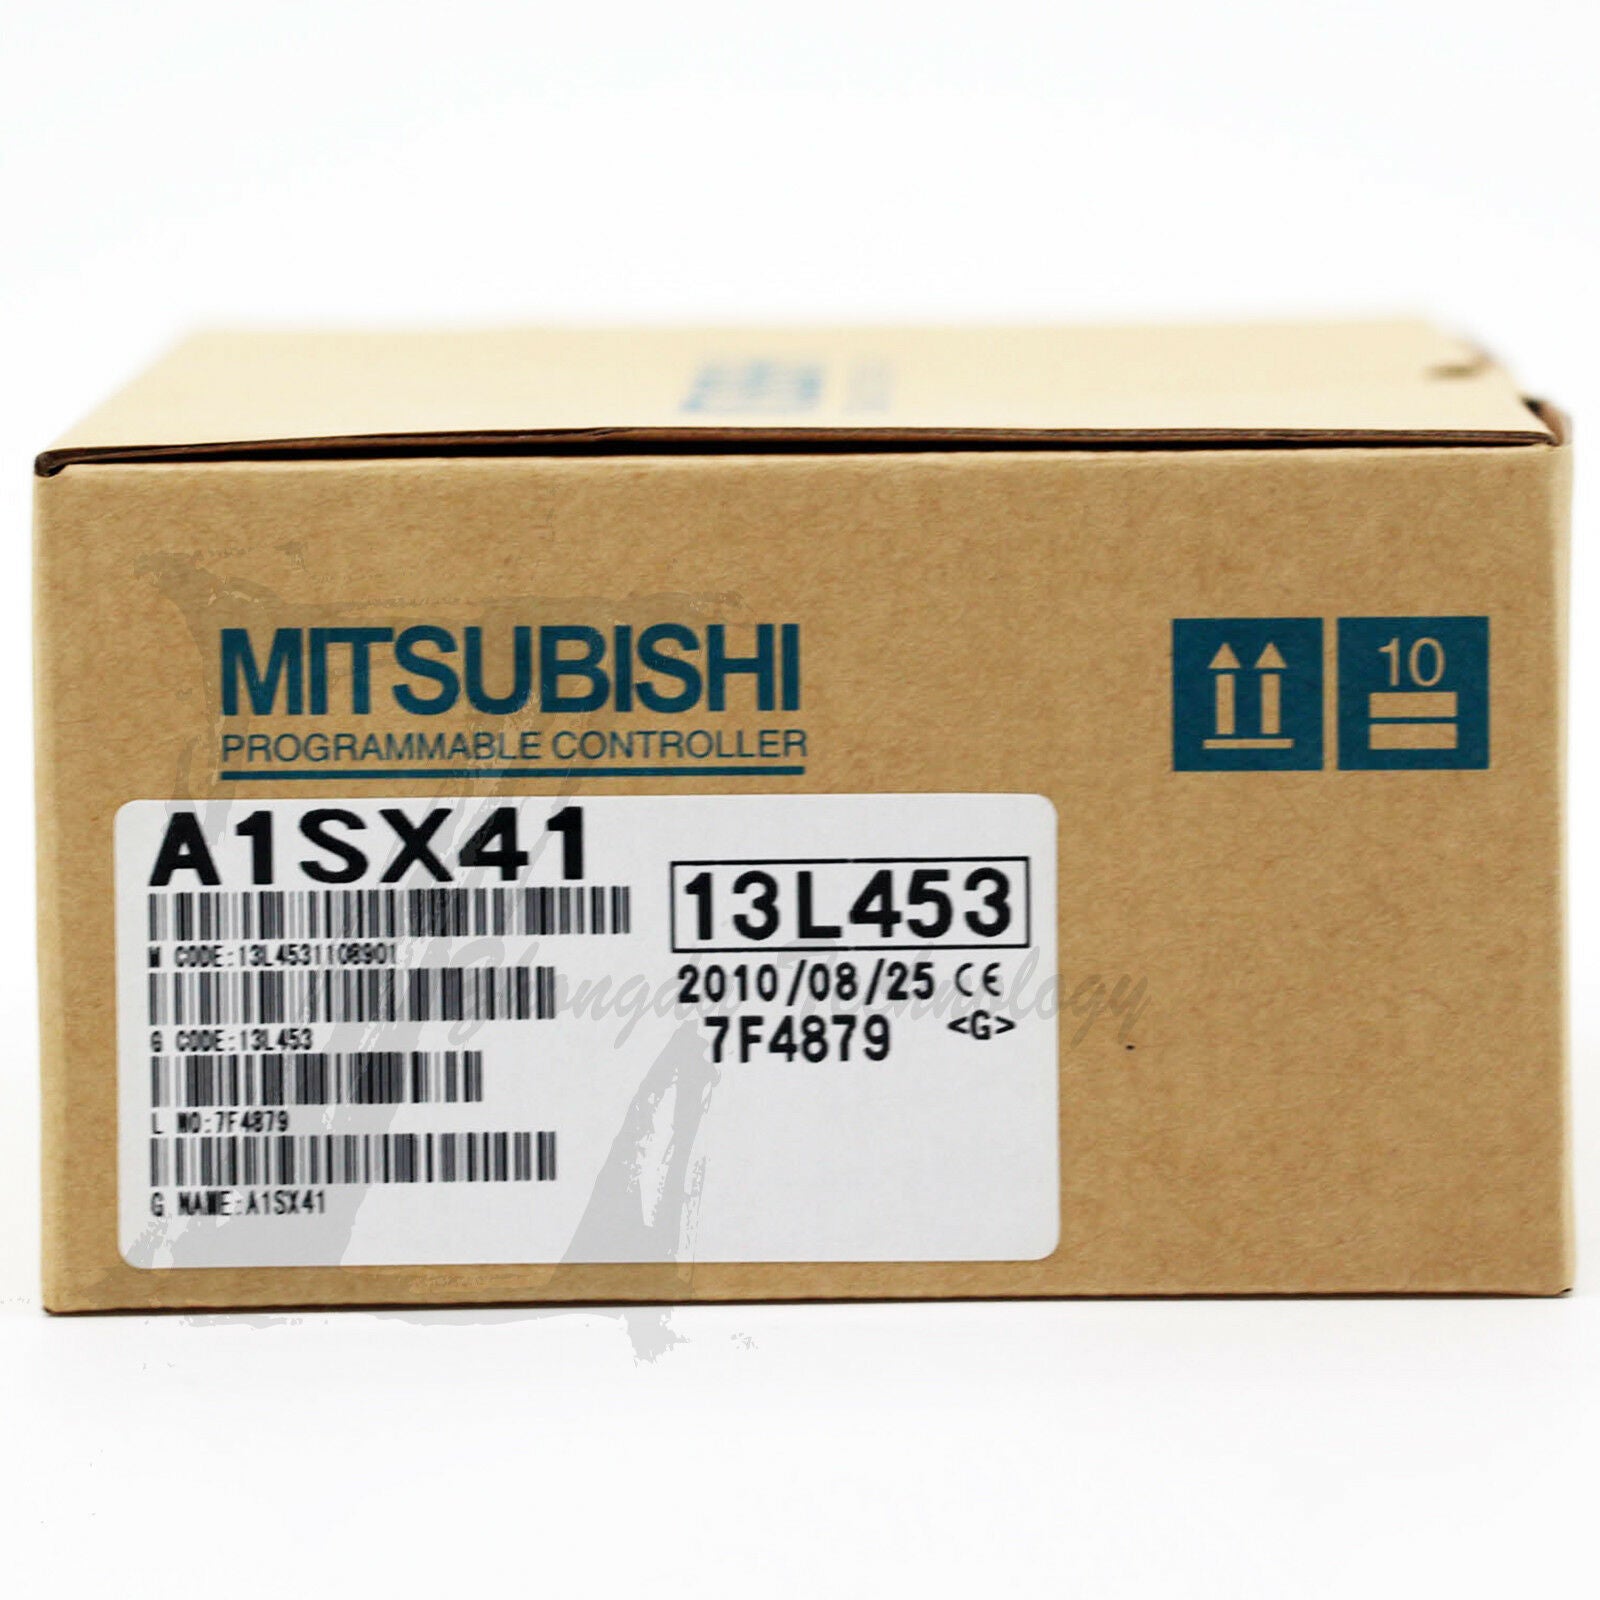 NEW Mitsubishi A1SX41 A series PLC Module